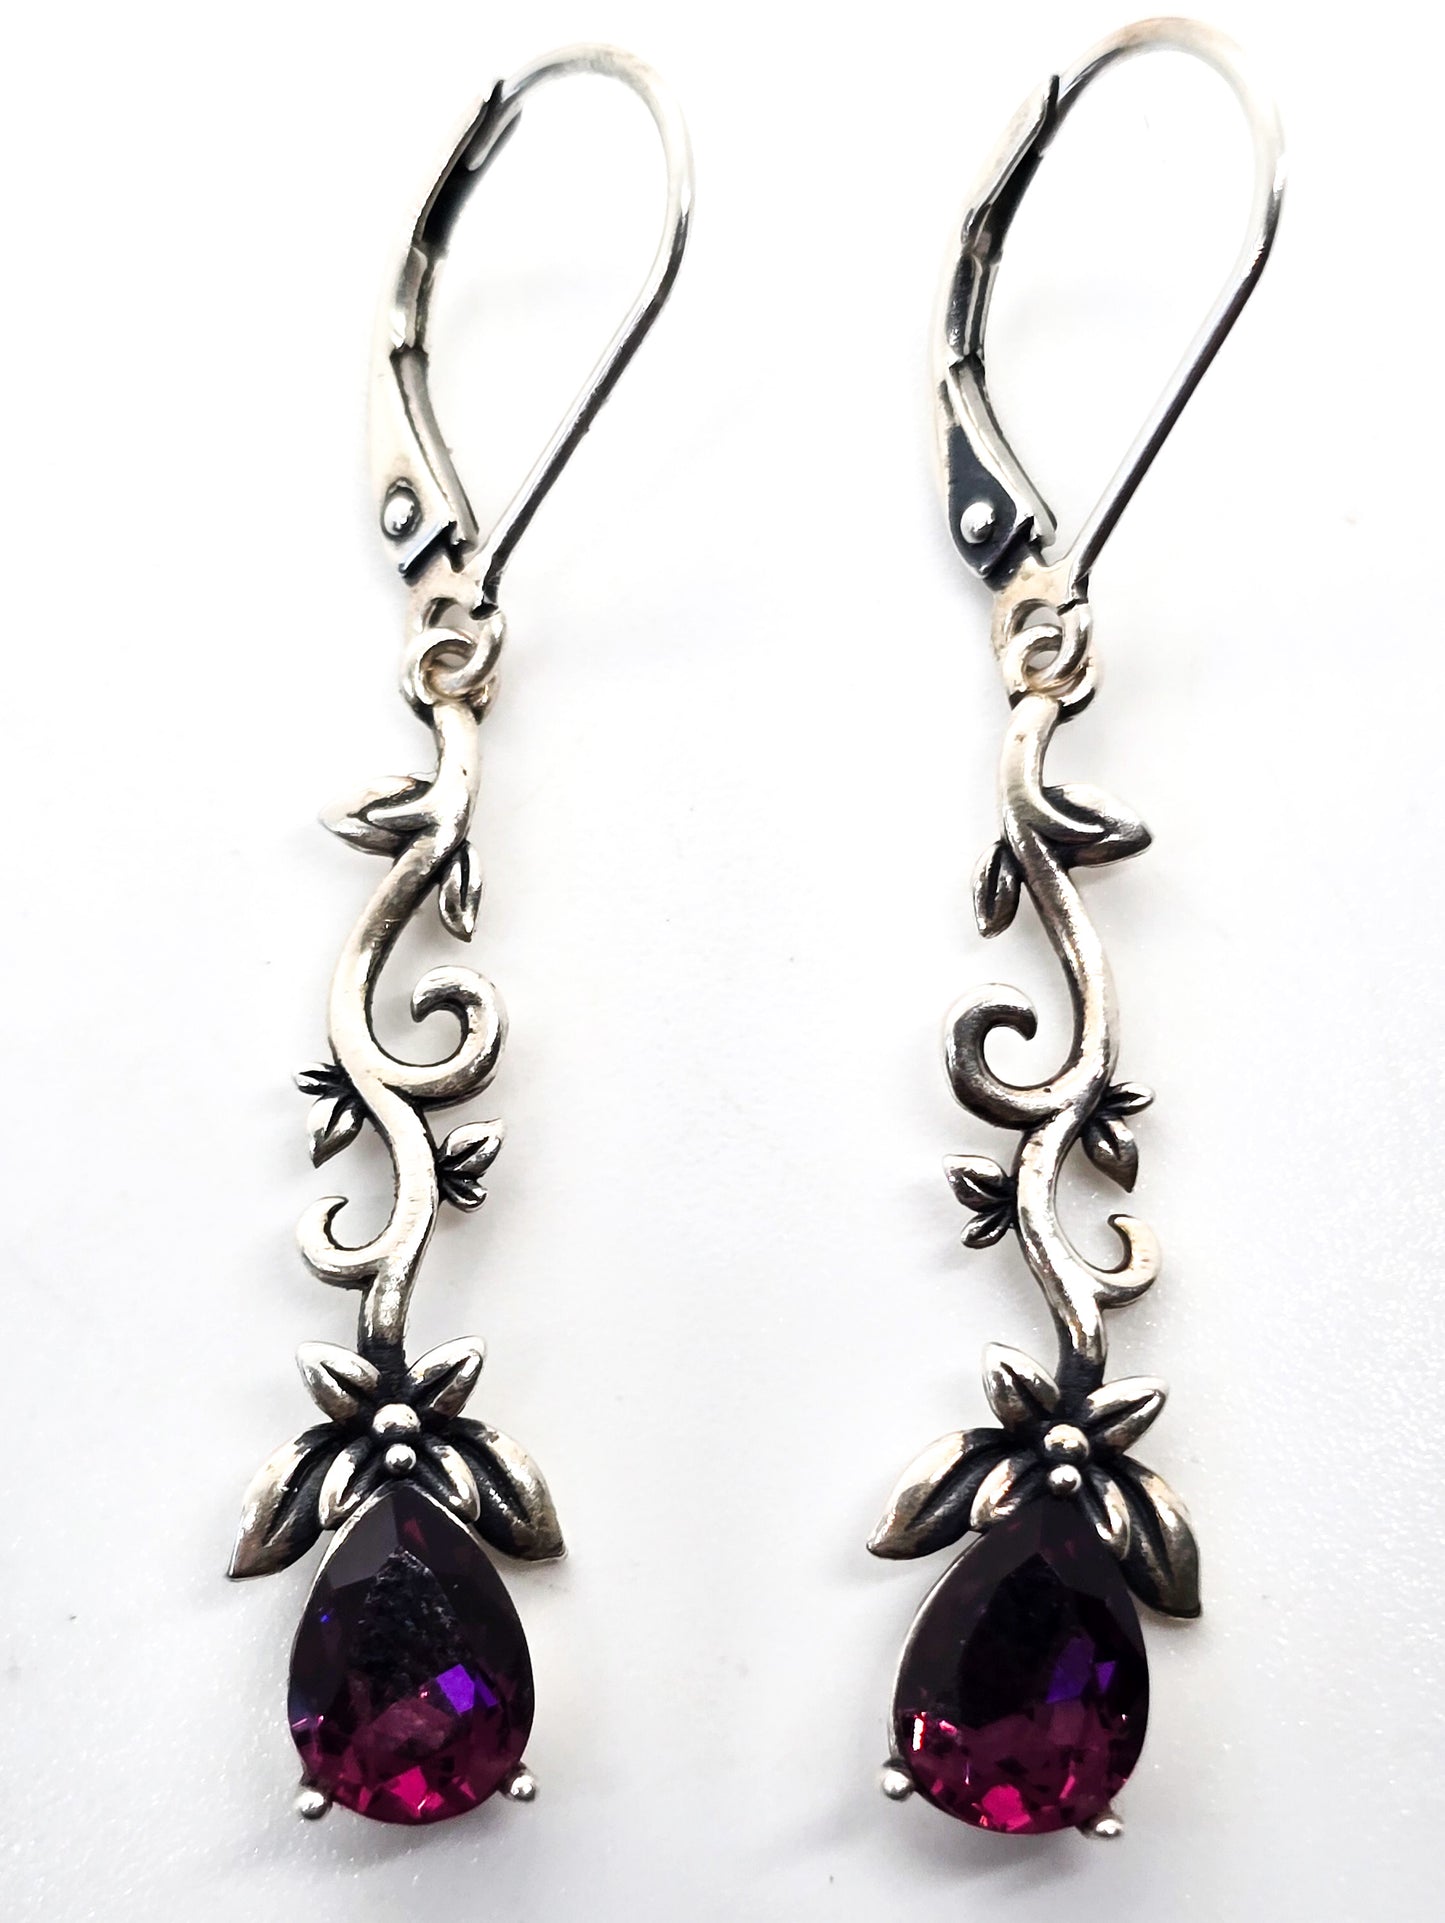 Twisted Ivy purple pear cut rhinestone sterling silver lever back earrings